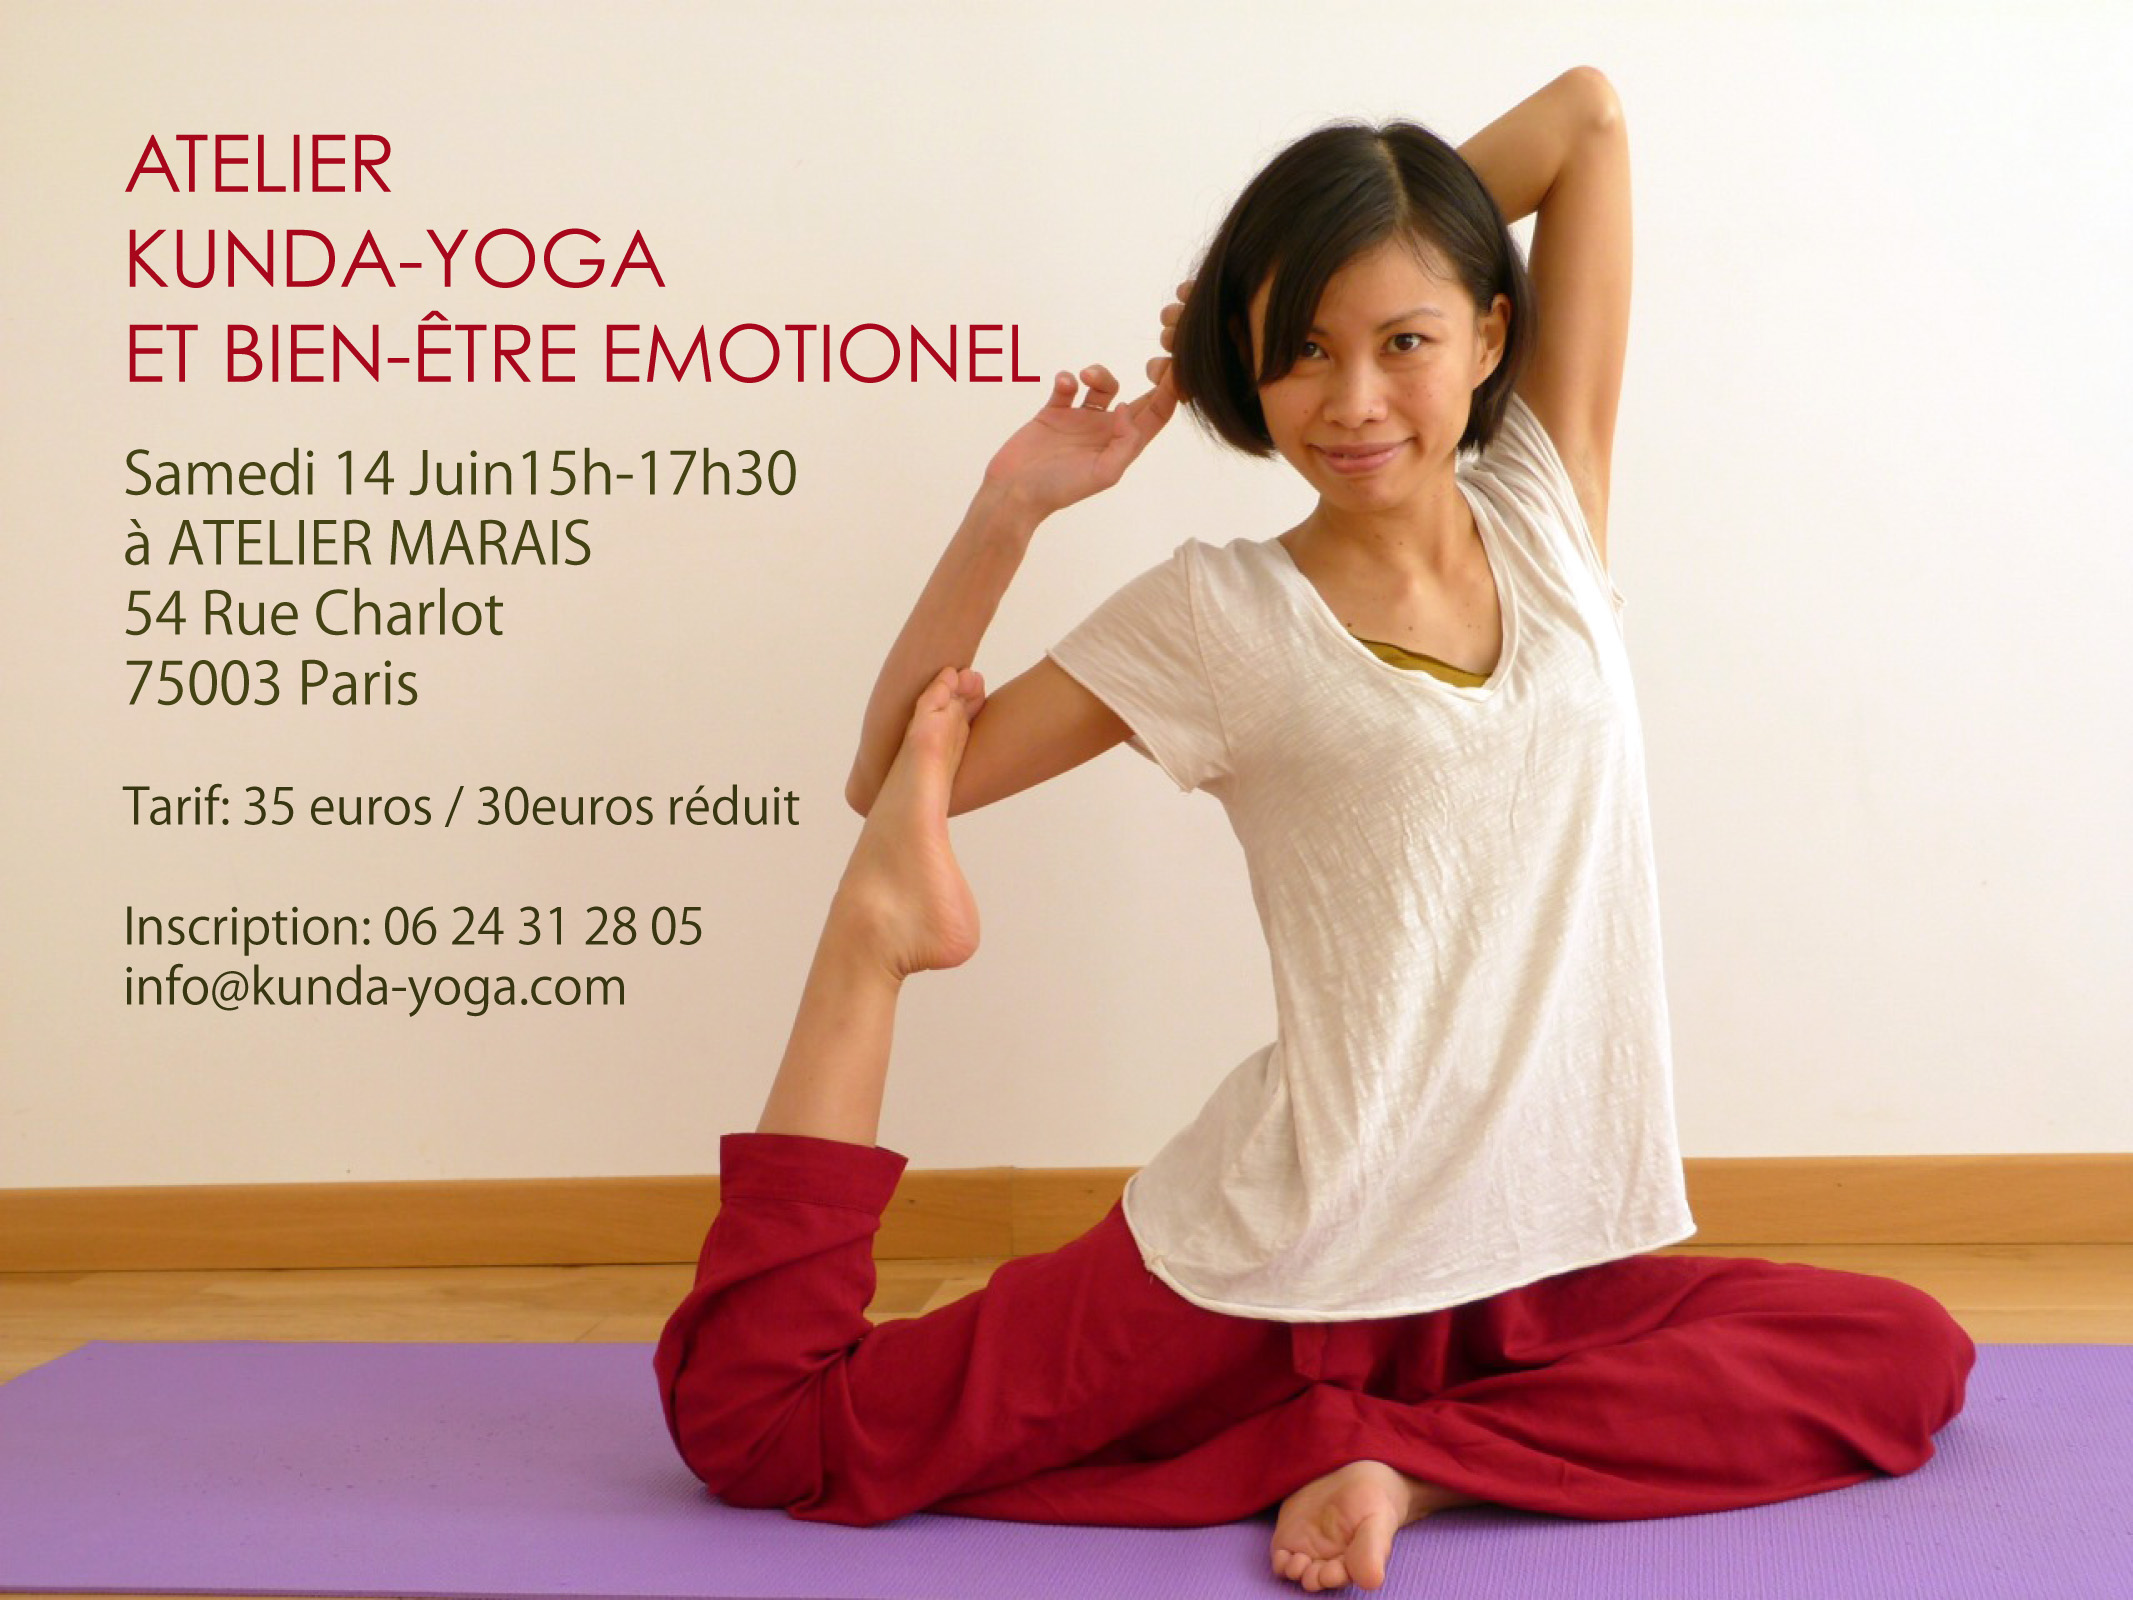 Samedi 14 Juin 15h-17h30 Atelier « Kunda-Yoga et bien-être émotionnel »